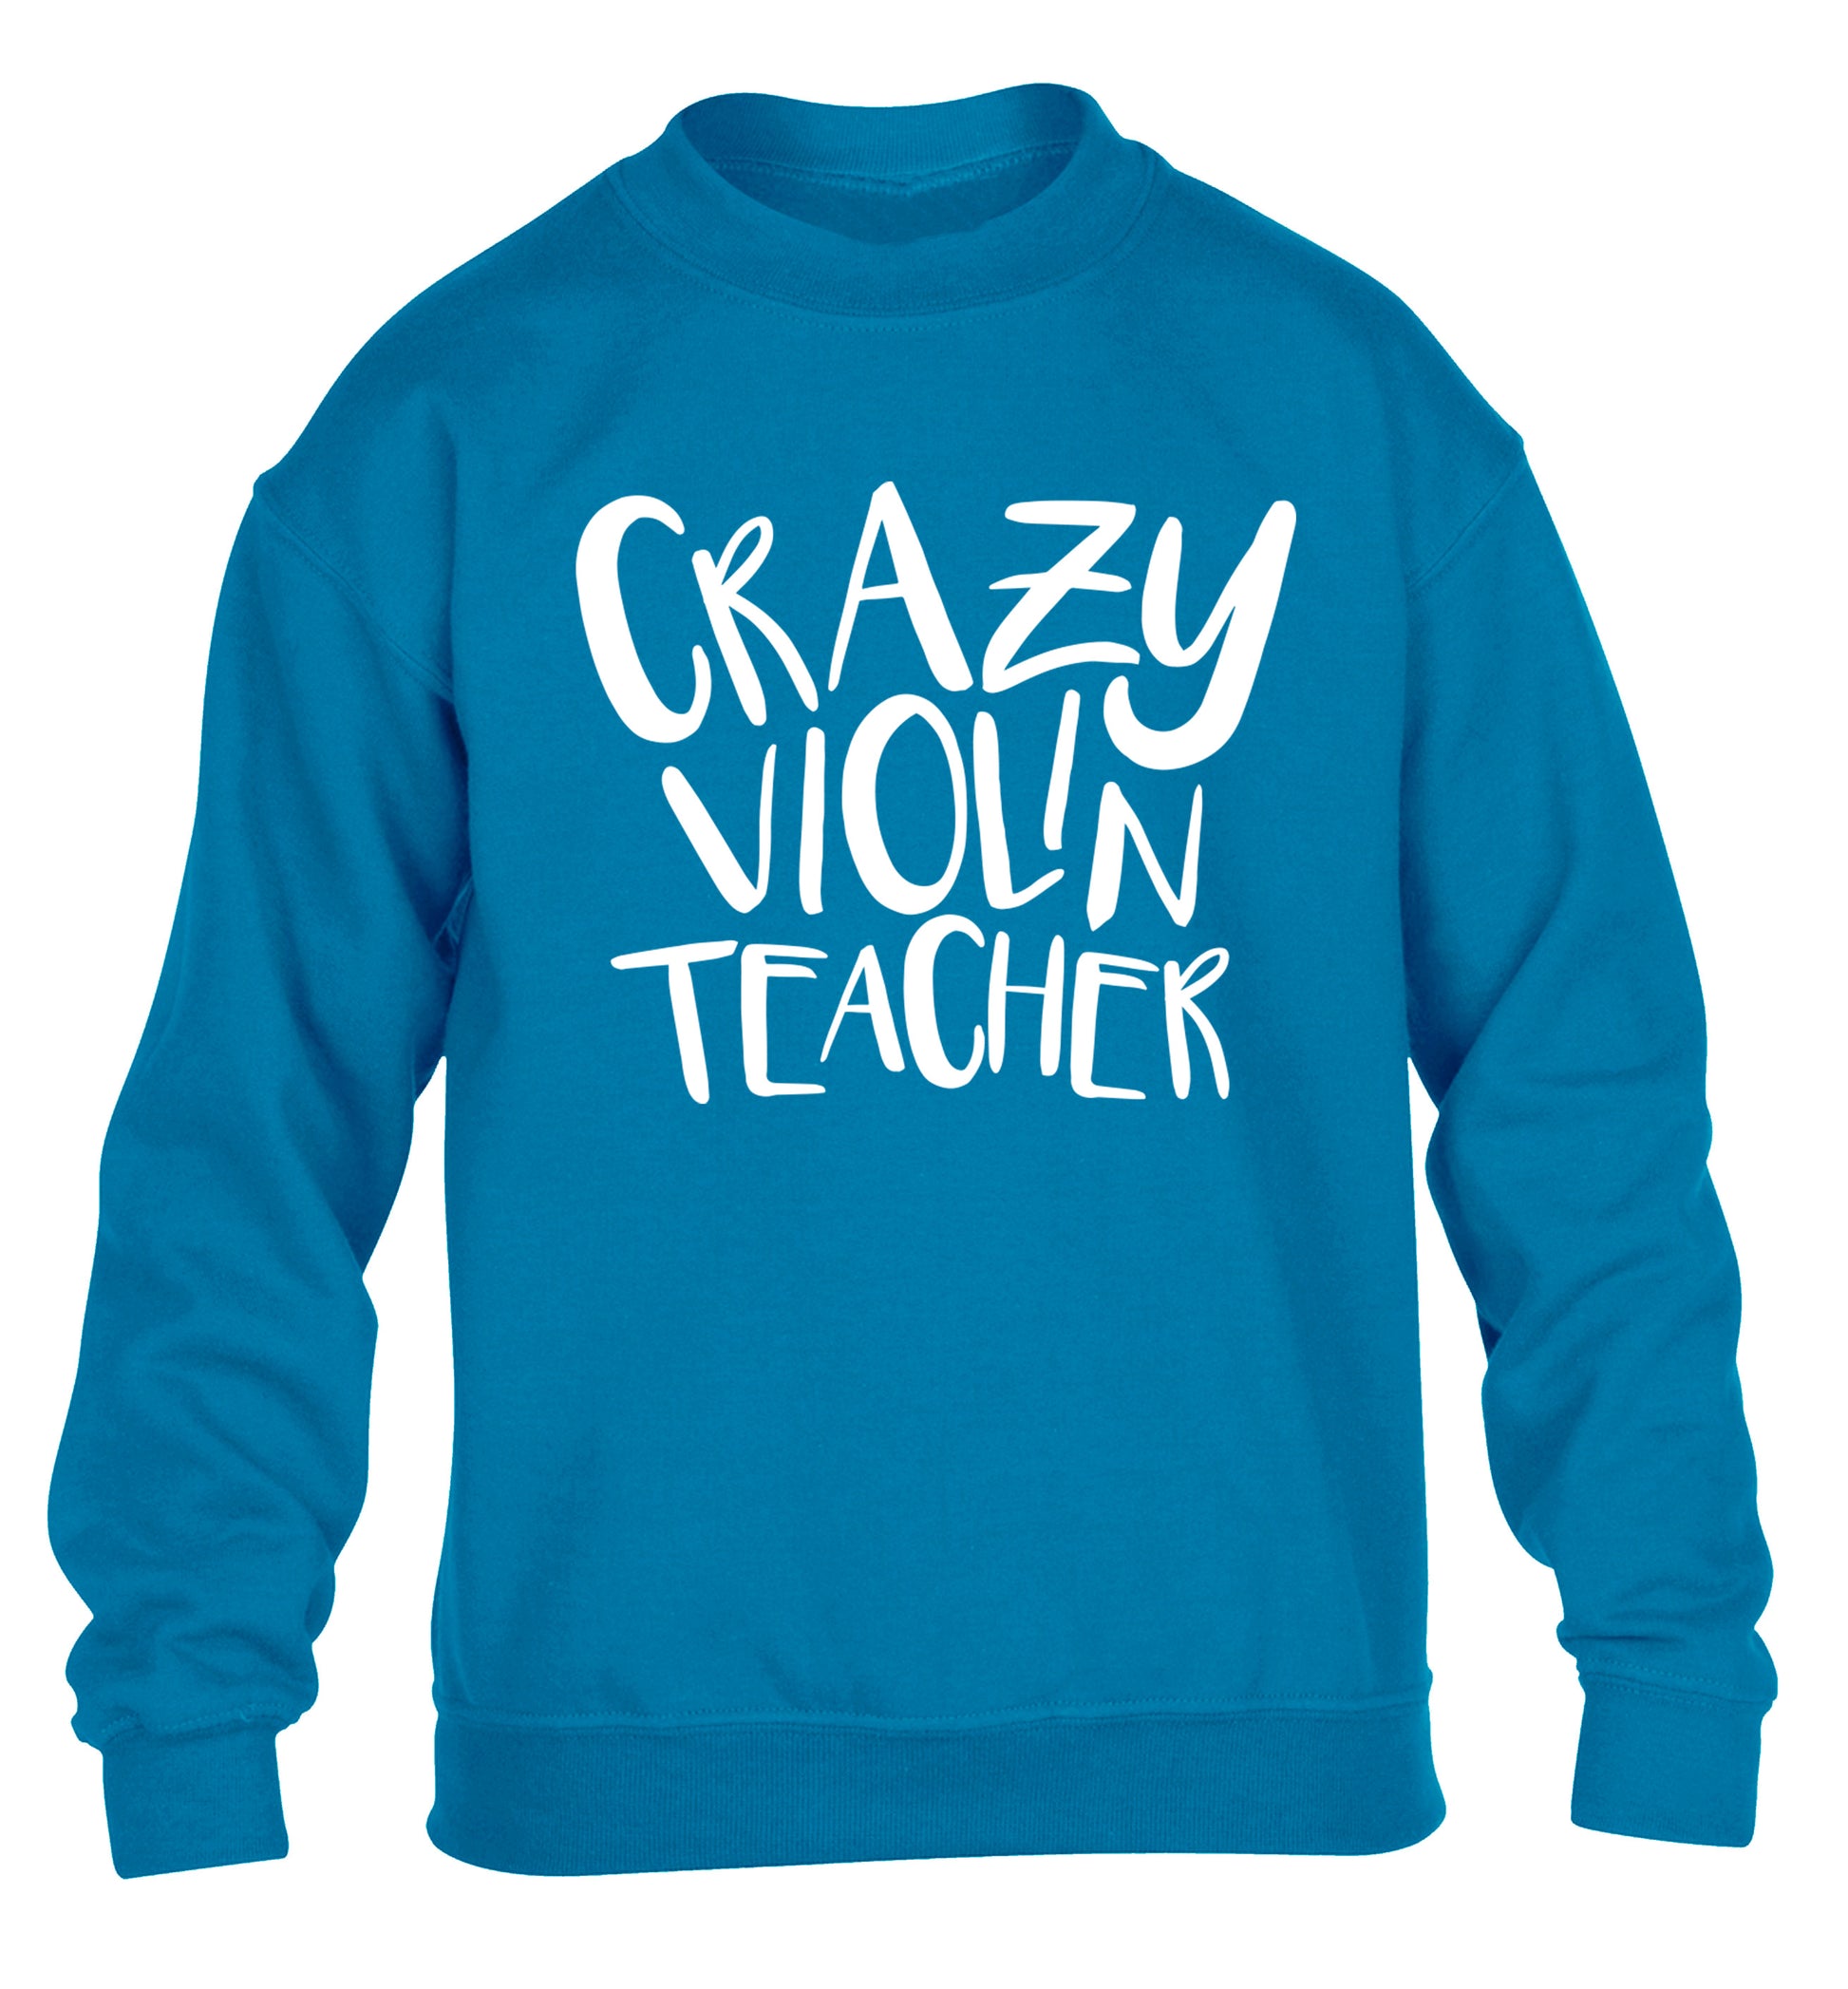 Crazy violin teacher children's blue sweater 12-13 Years